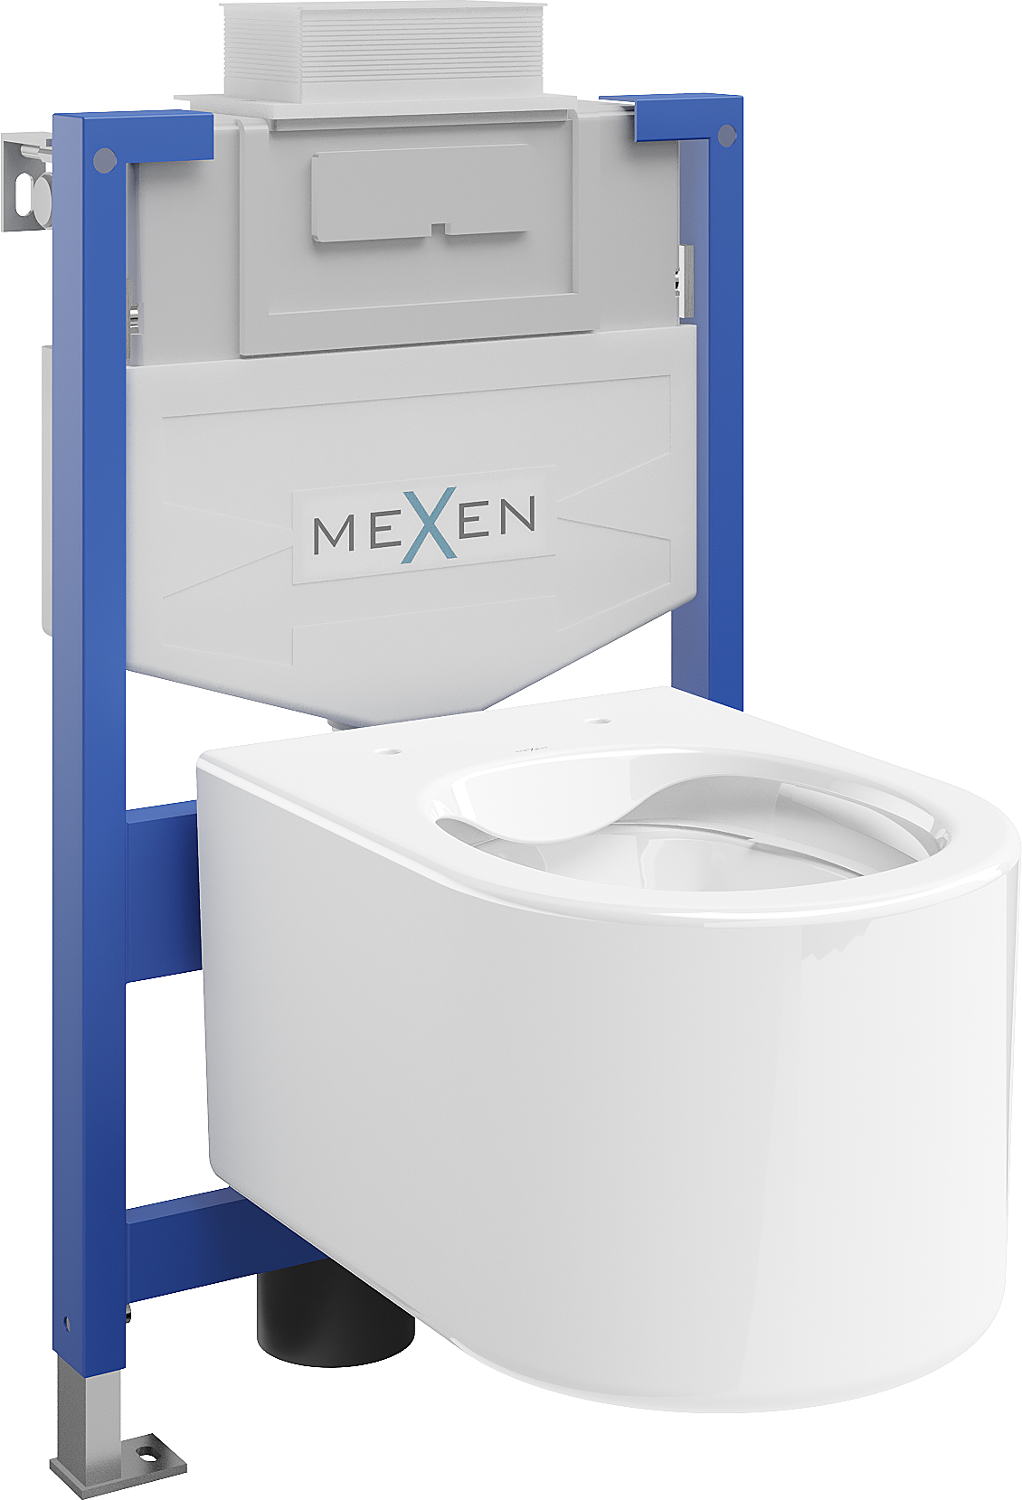 Mexen podomietkový WC systém Felix XS-U s WC misou Sofia, biela- 6853354XX00